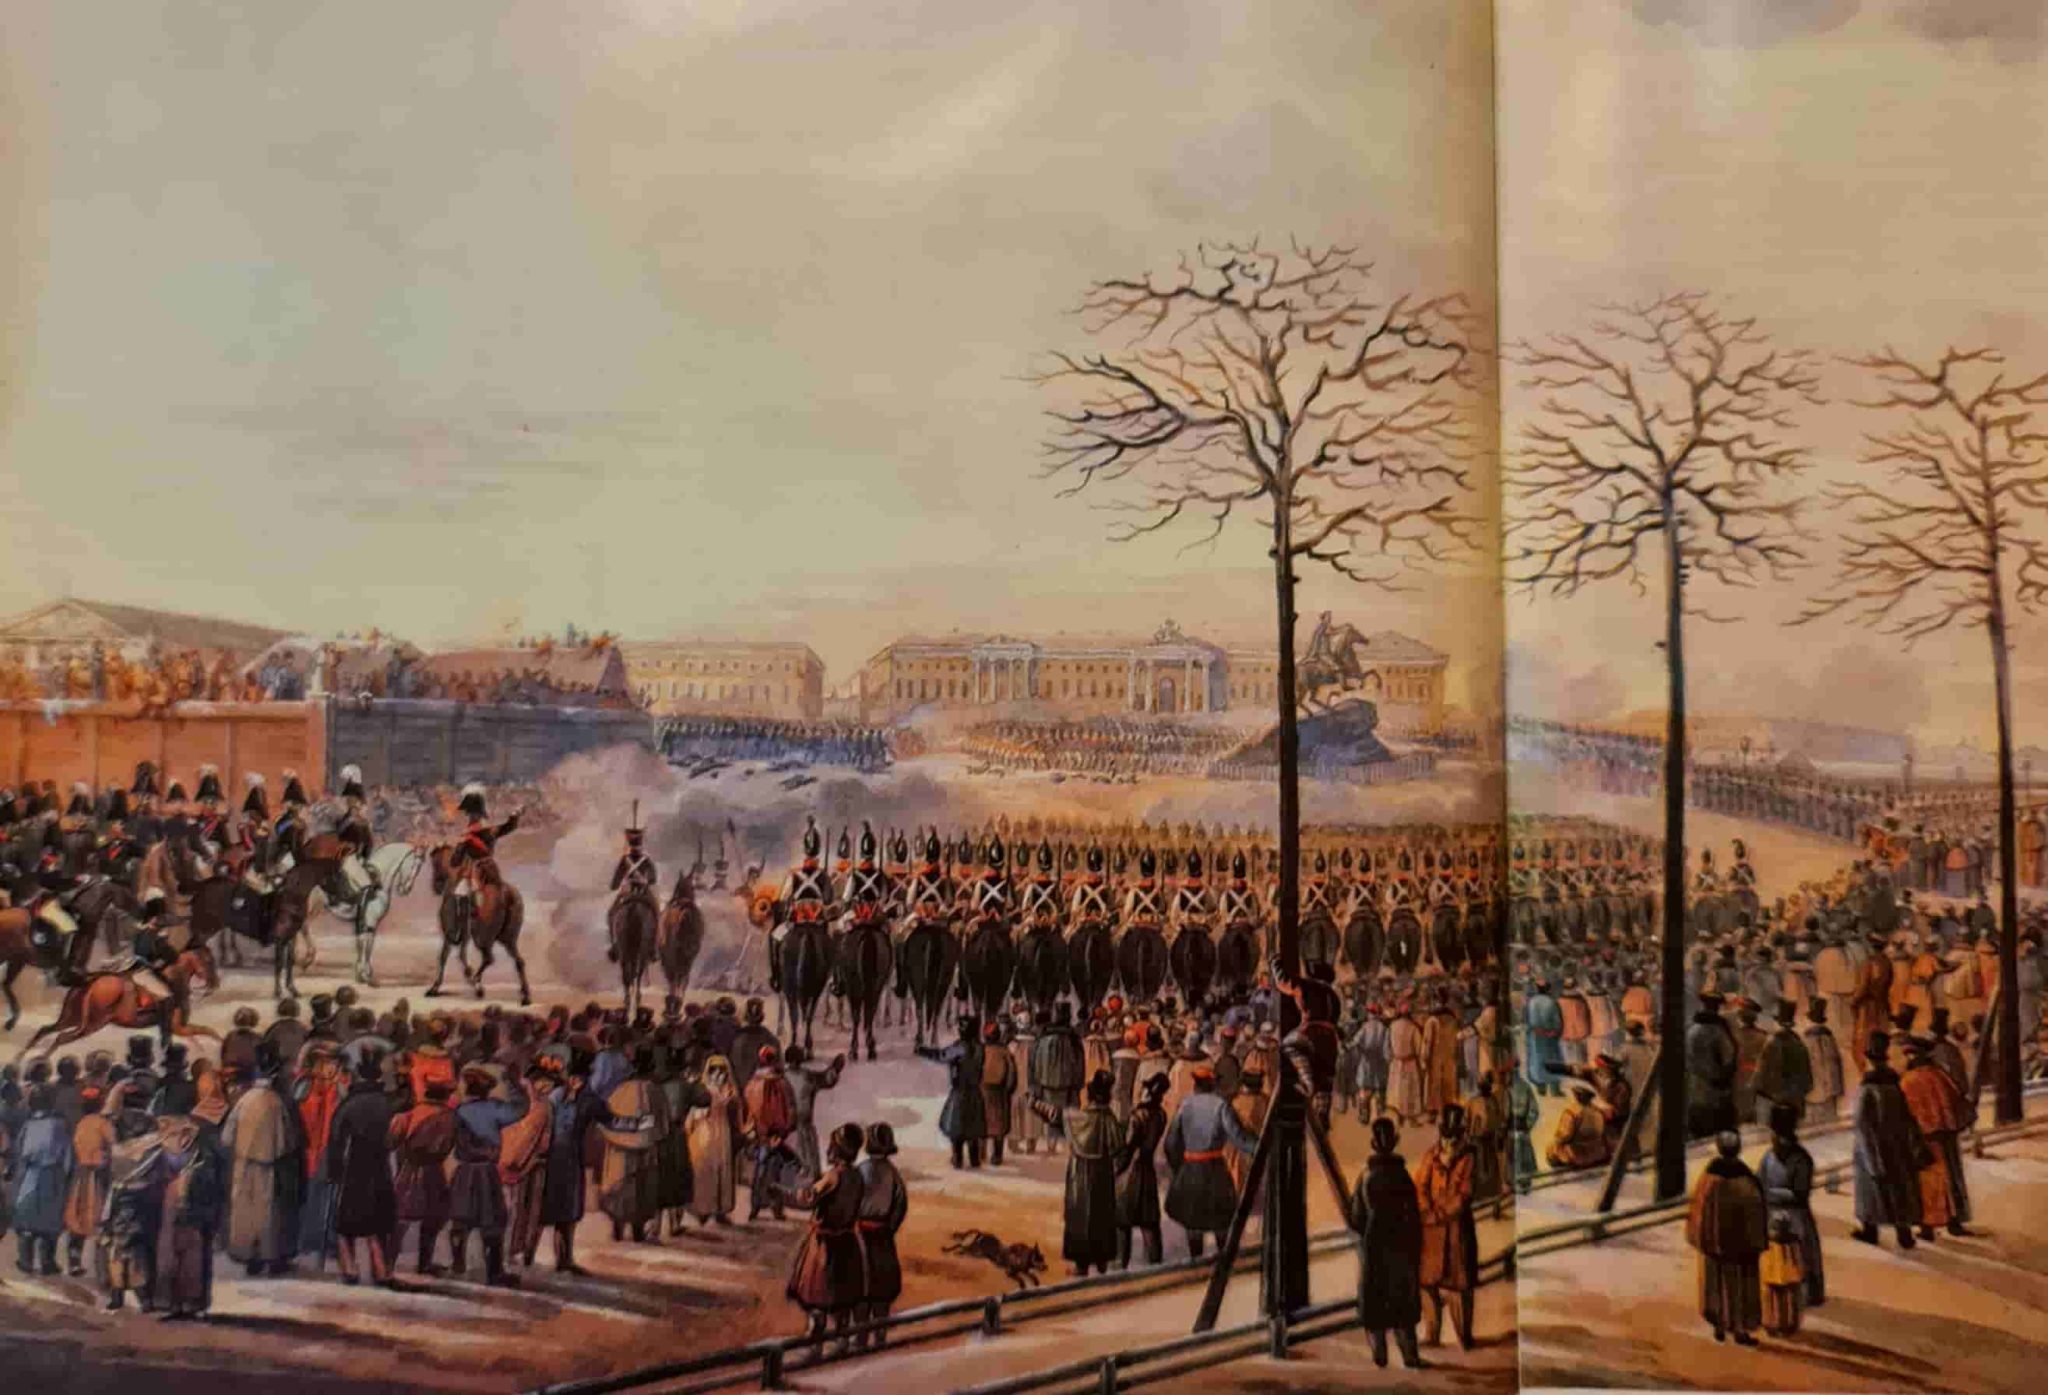 К Кольман восстание Декабристов на Сенатской площади 1825 г